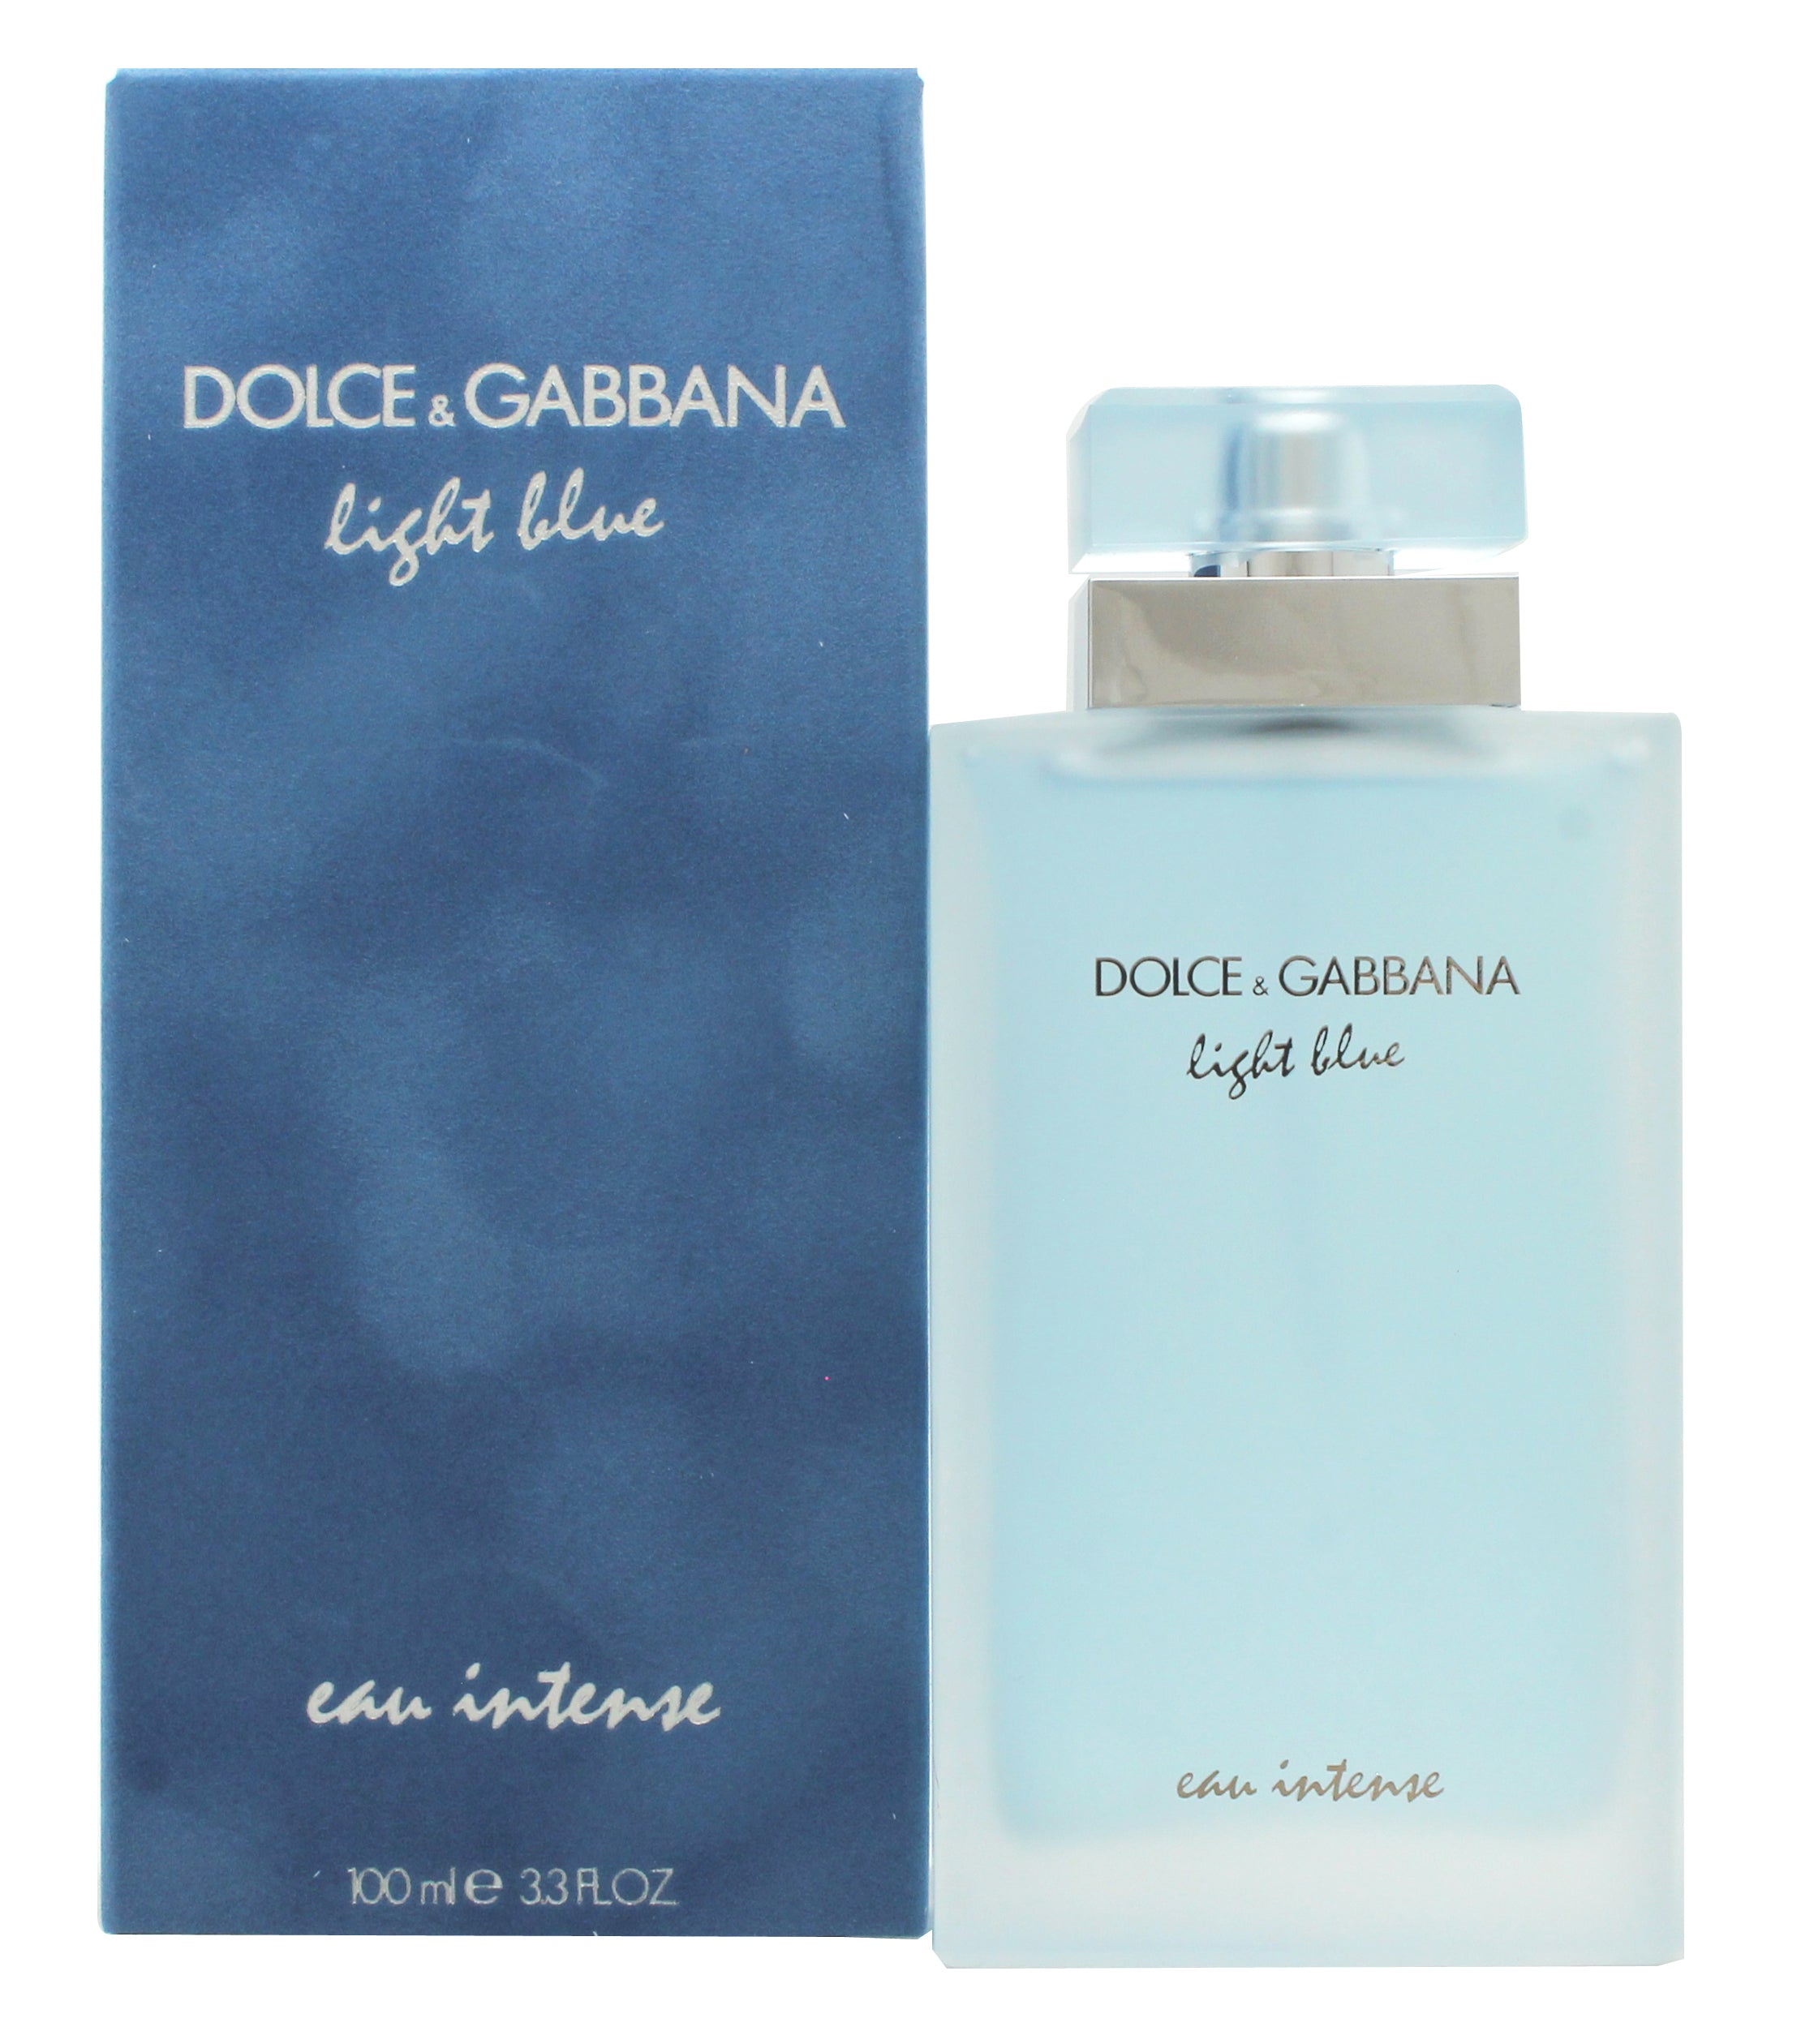 View Dolce Gabbana Light Blue Eau Intense Eau de Parfum 100ml Spray information